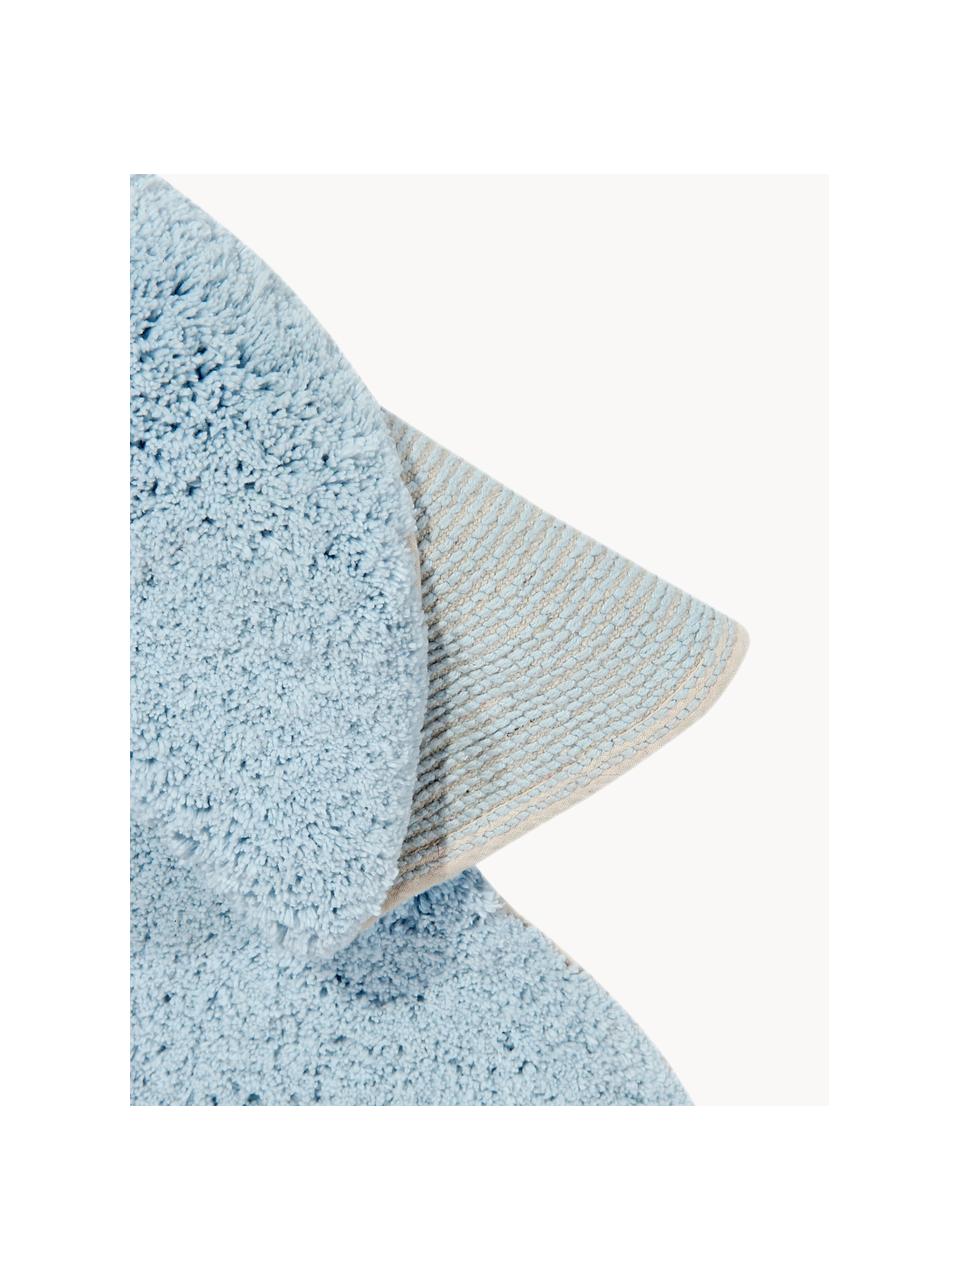 Handgeweven kindervloerkleed Dream met hoog-laag effect, wasbaar, Bovenzijde: 97% katoen, 3% kunstvezel, Onderzijde: 100% katoen, Lichtblauw, wit, B 110 x L 170 cm (maat S)